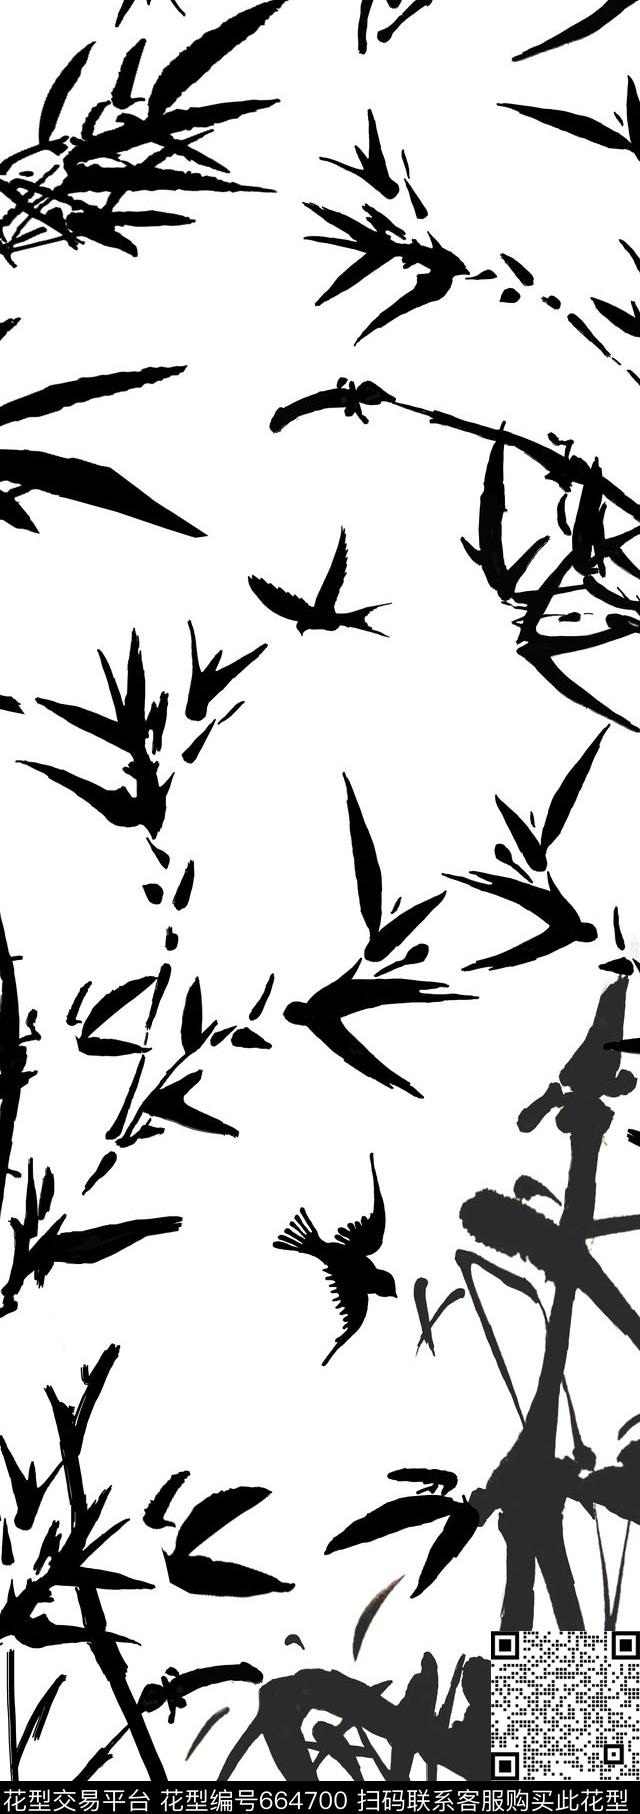 99.jpg - 664700 - 中国风 水墨竹子长巾 - 传统印花花型 － 长巾花型设计 － 瓦栏